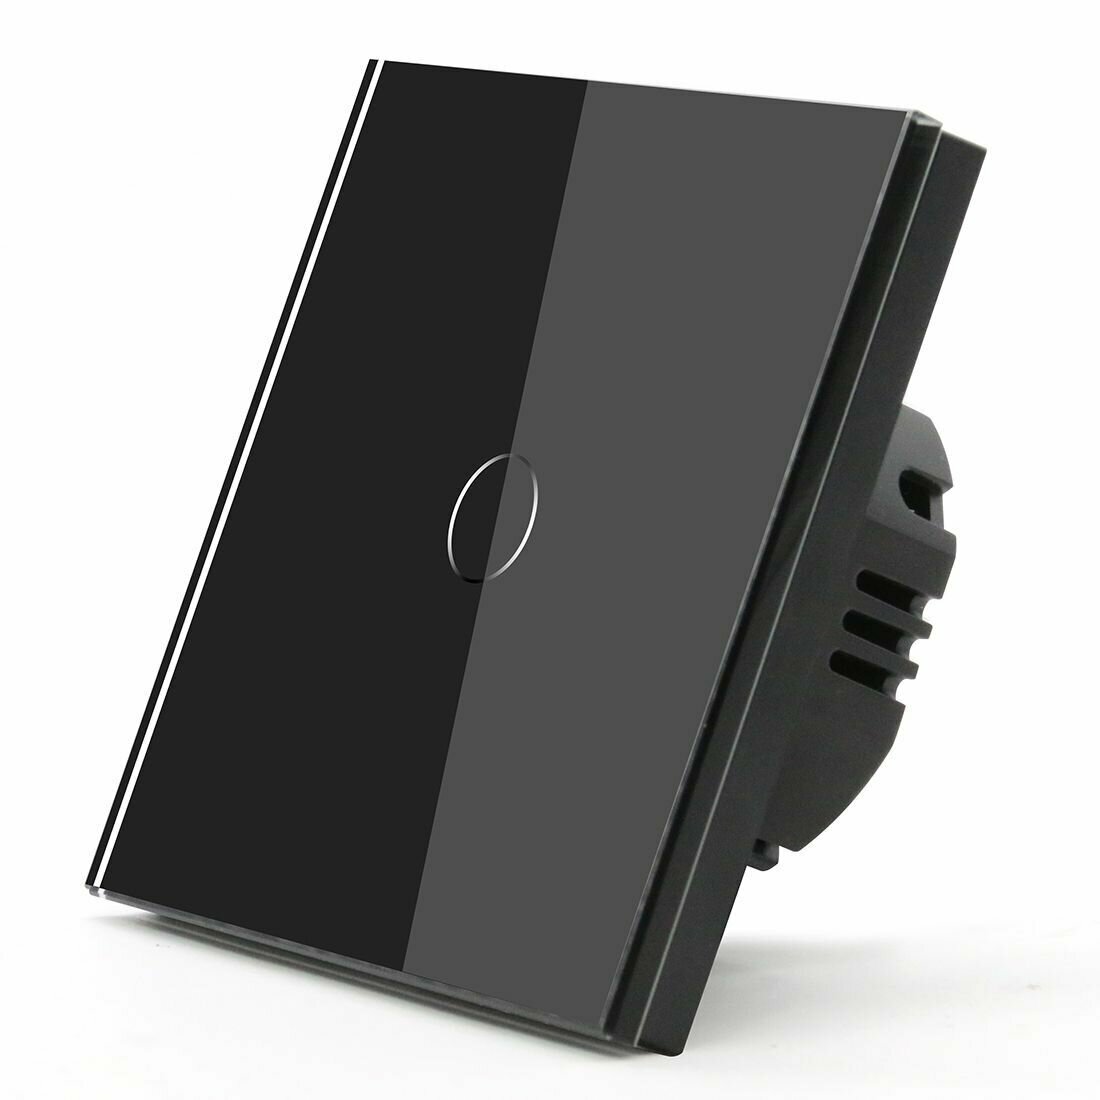 Сенсорный выключатель 1 клавиша 1 пост, (1G) панель матовое стекло 86х86 мм, цвет матовый черный